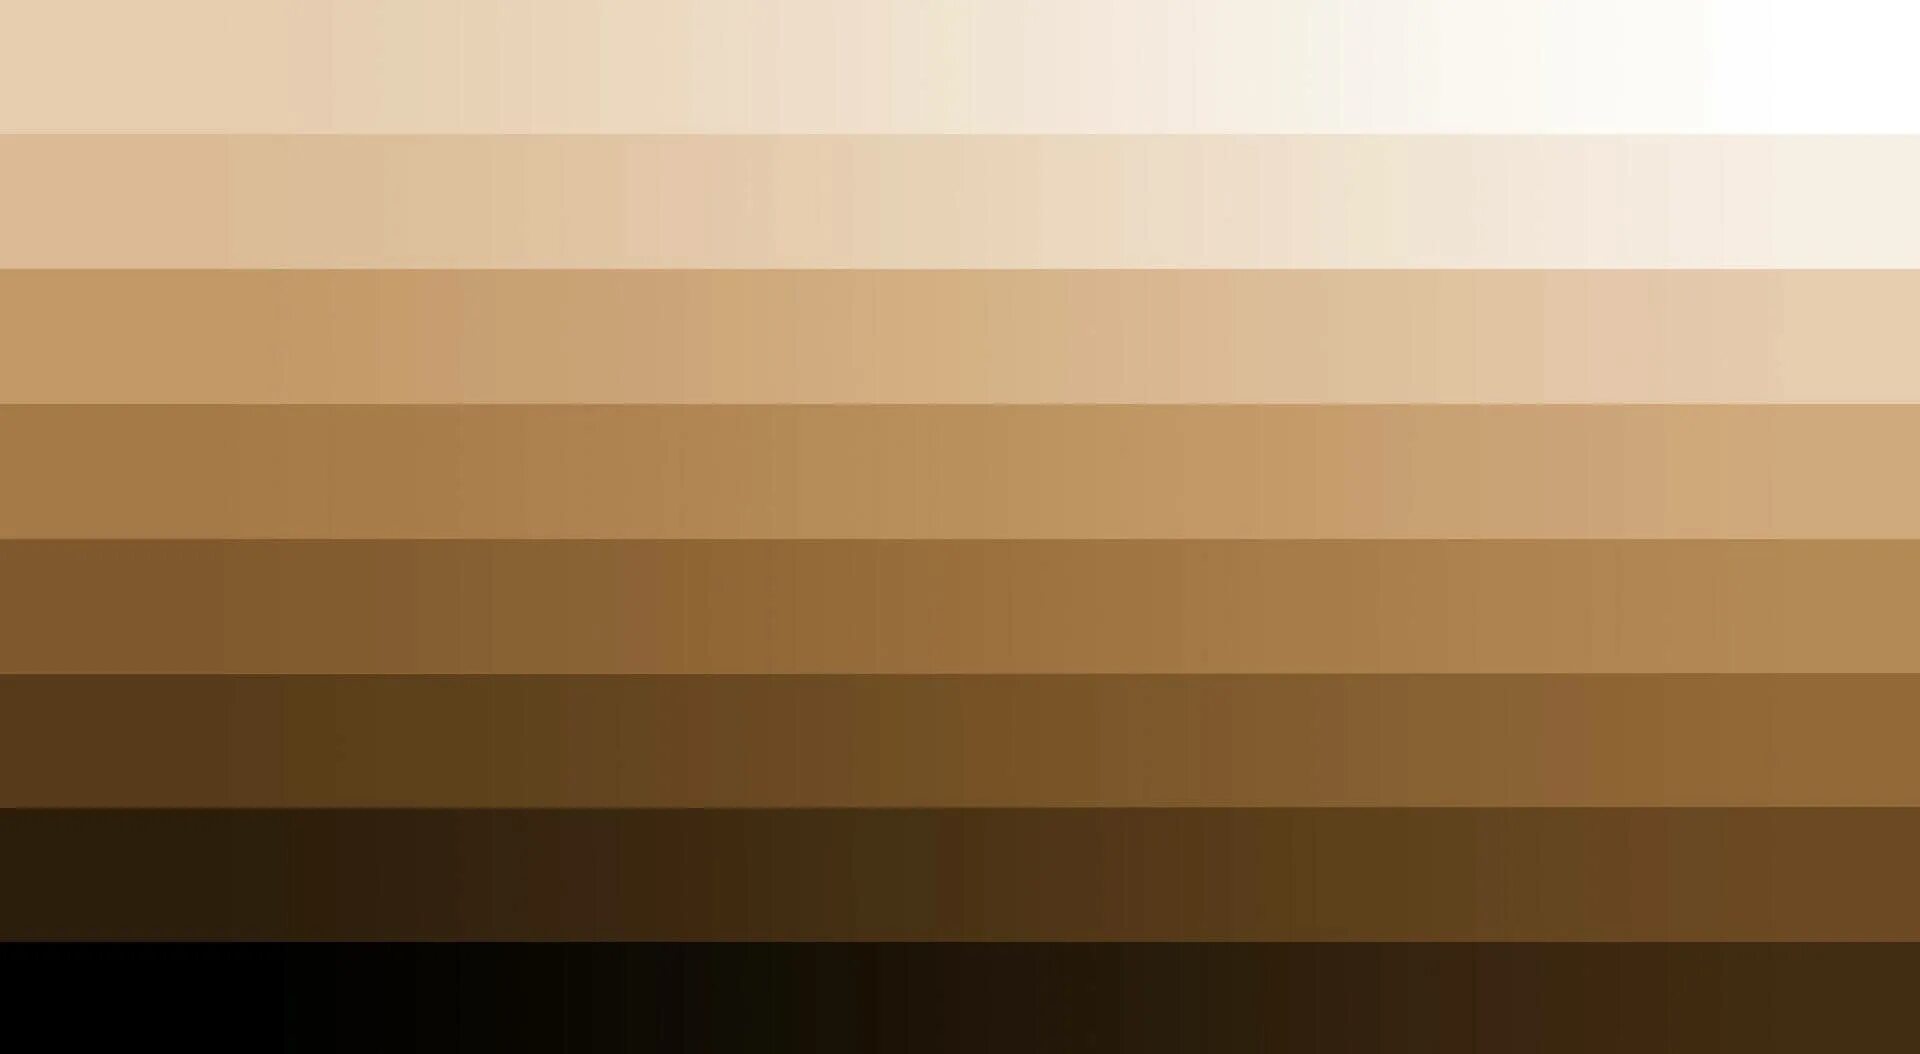 Beige brown. Кофейный цвет. Светлокоричныевые оттенки. Коричневый цвет. Коричневый градиент.